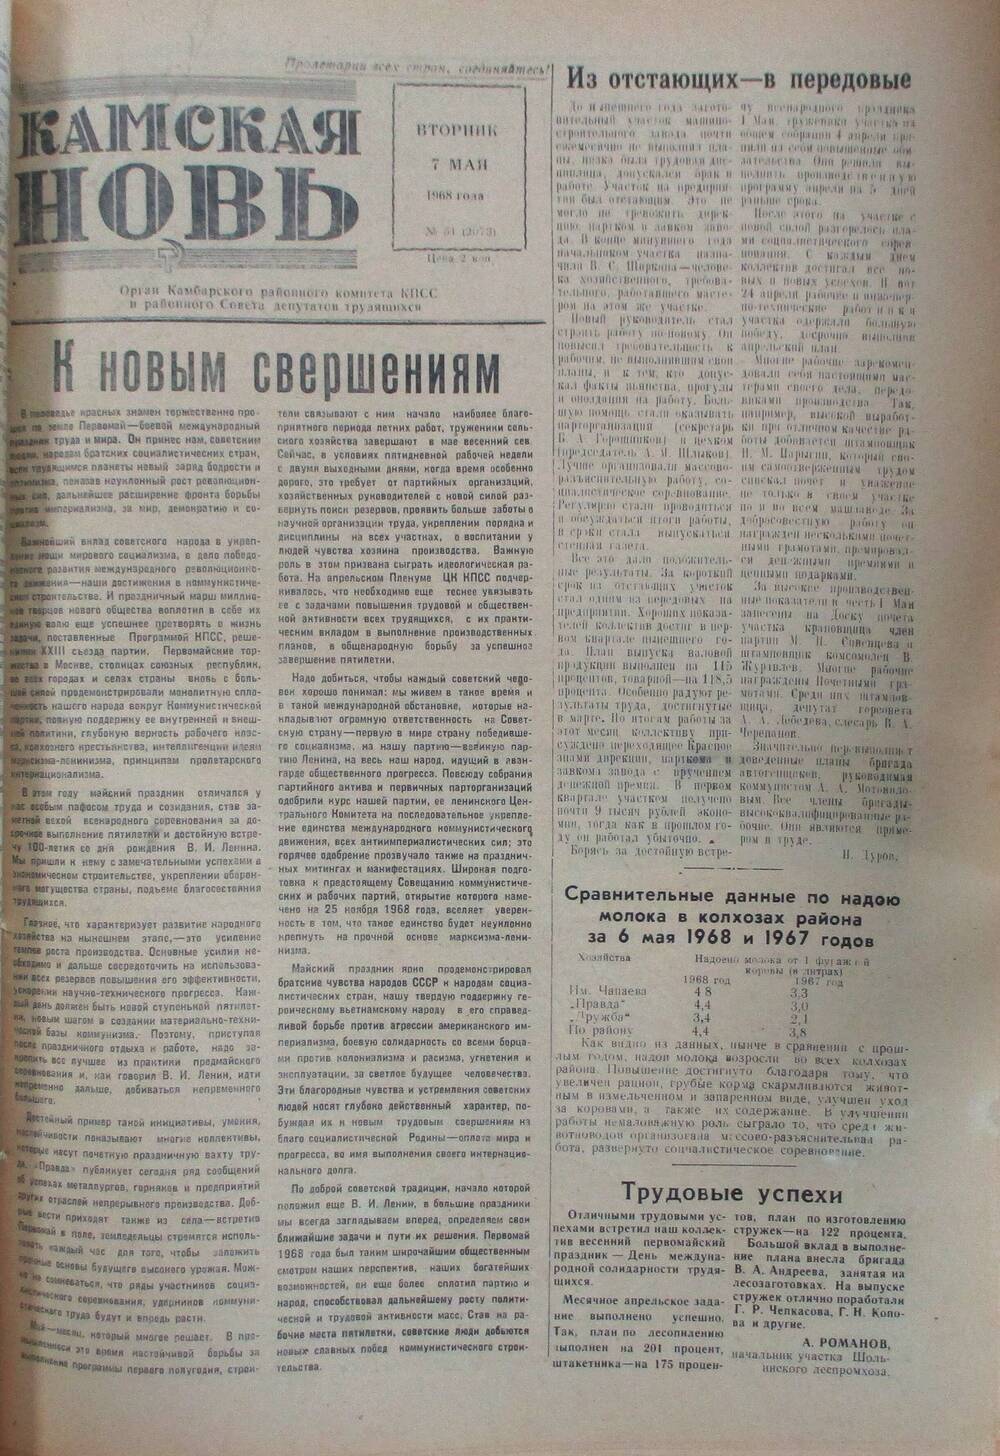 Газета Камская новь за 1968 год, орган Камбарского Райсовета и РККПСС, подшивка с №1 по №150, №51.